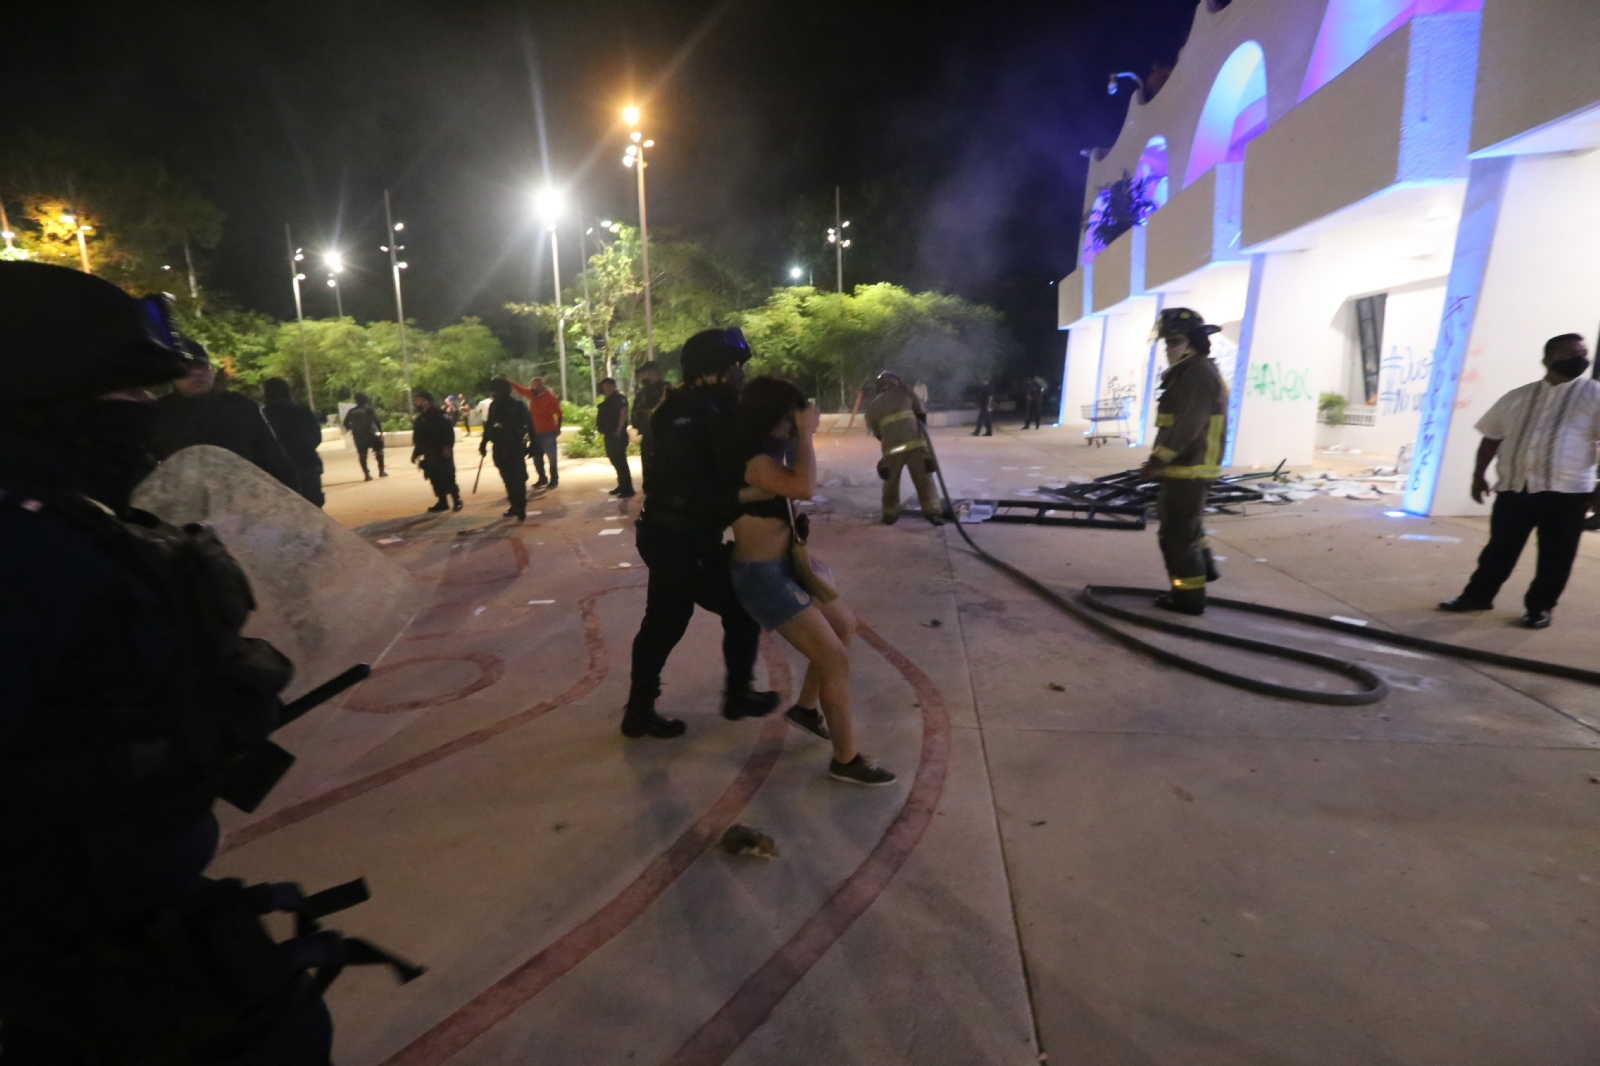 Las organizaciones europeas se mostraron preocupadas por la represión policiaca ocurrida en Cancún, indicó el Comité del 9N